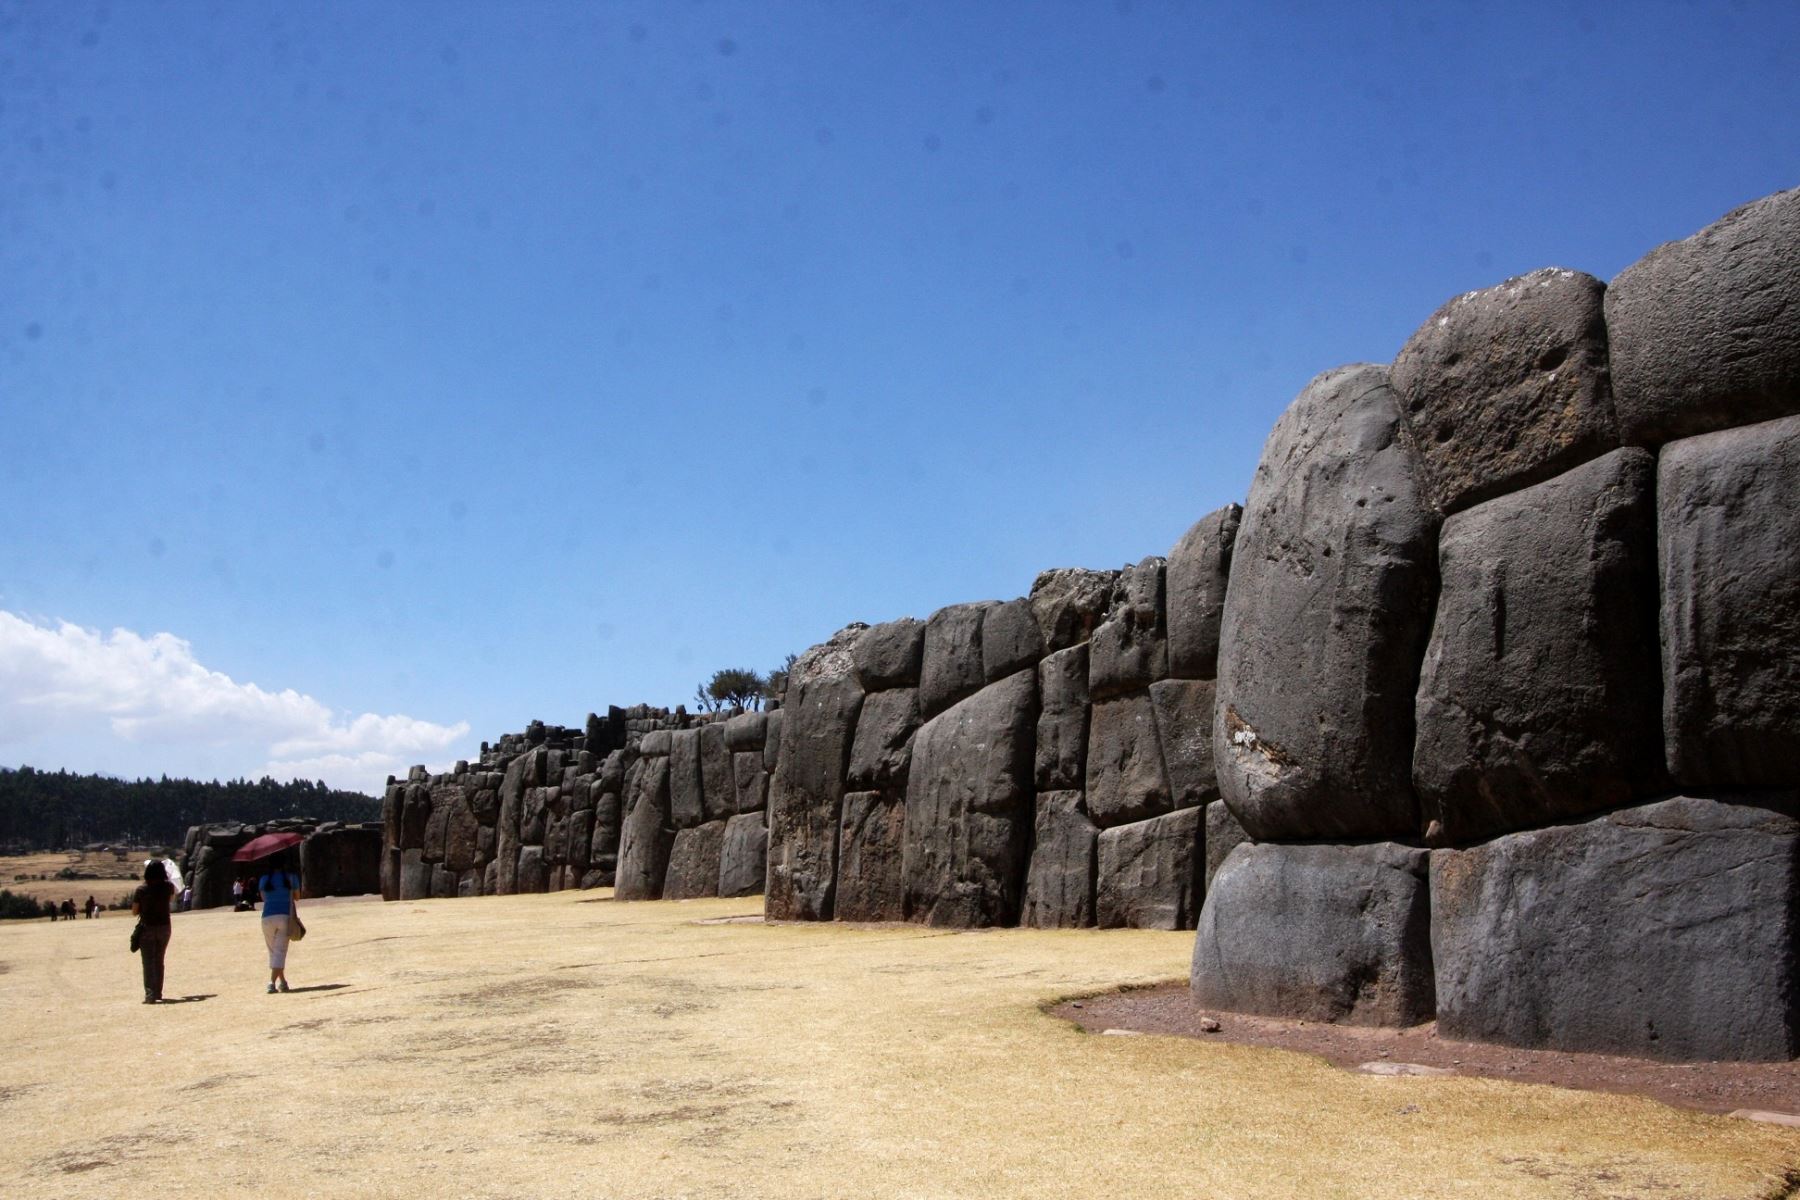 Los cronistas españoles describen a Sacsayhuamán como un portento arquitectónico comparable con los grandes monumentos de la humanidad. Foto: ANDINA/Percy Hurtado